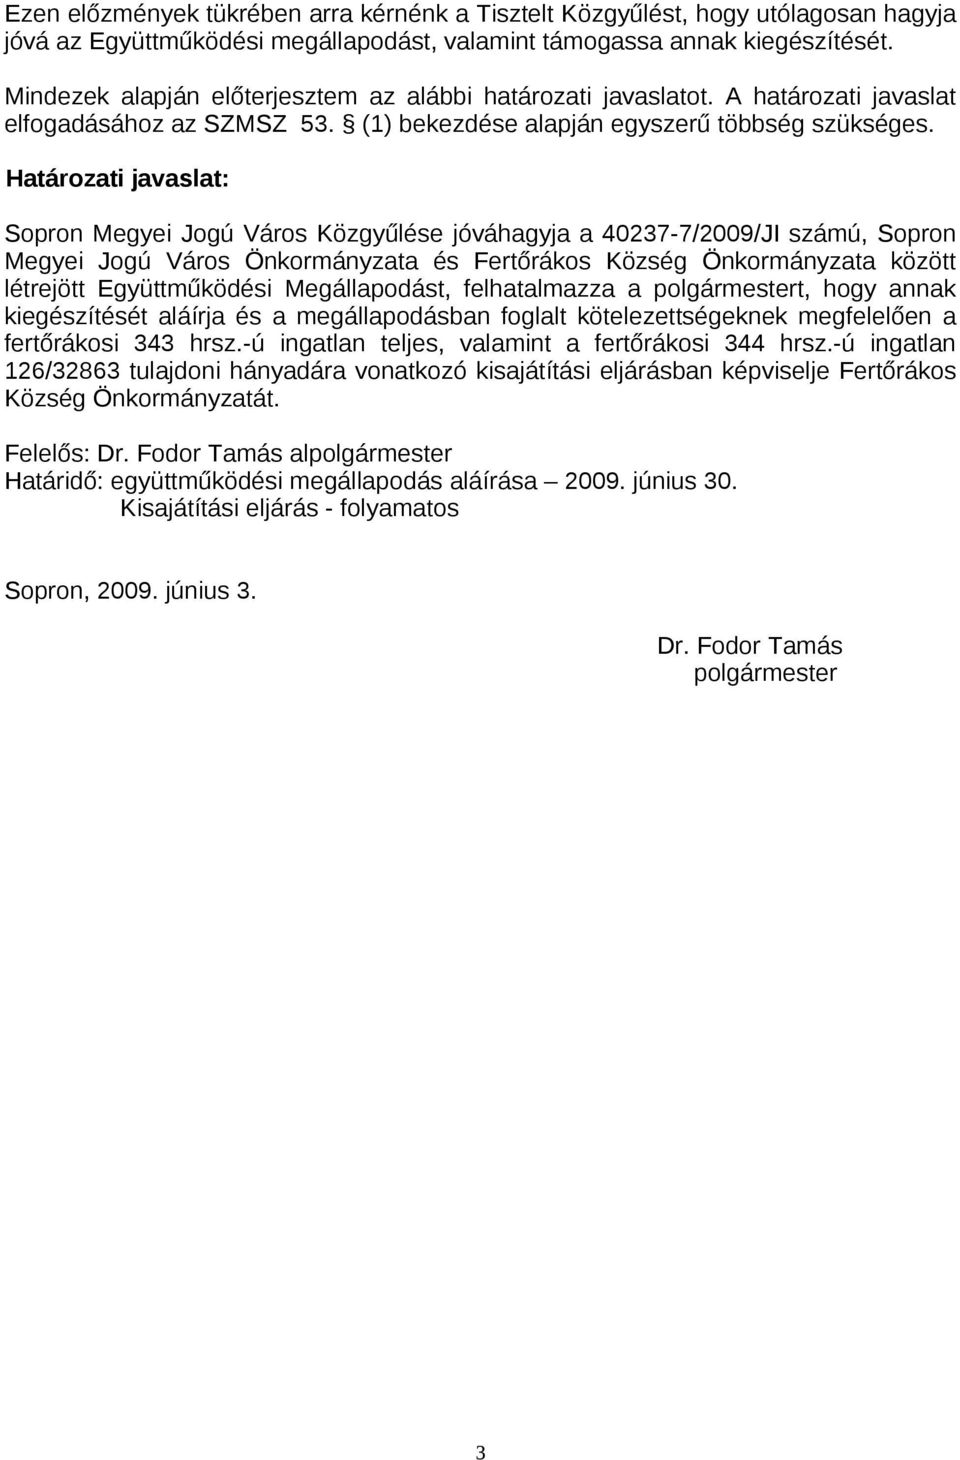 Határozati javaslat: Sopron Megyei Jogú Város Közgyűlése jóváhagyja a 40237-7/2009/JI számú, Sopron Megyei Jogú Város Önkormányzata és Fertőrákos Község Önkormányzata között létrejött Együttműködési